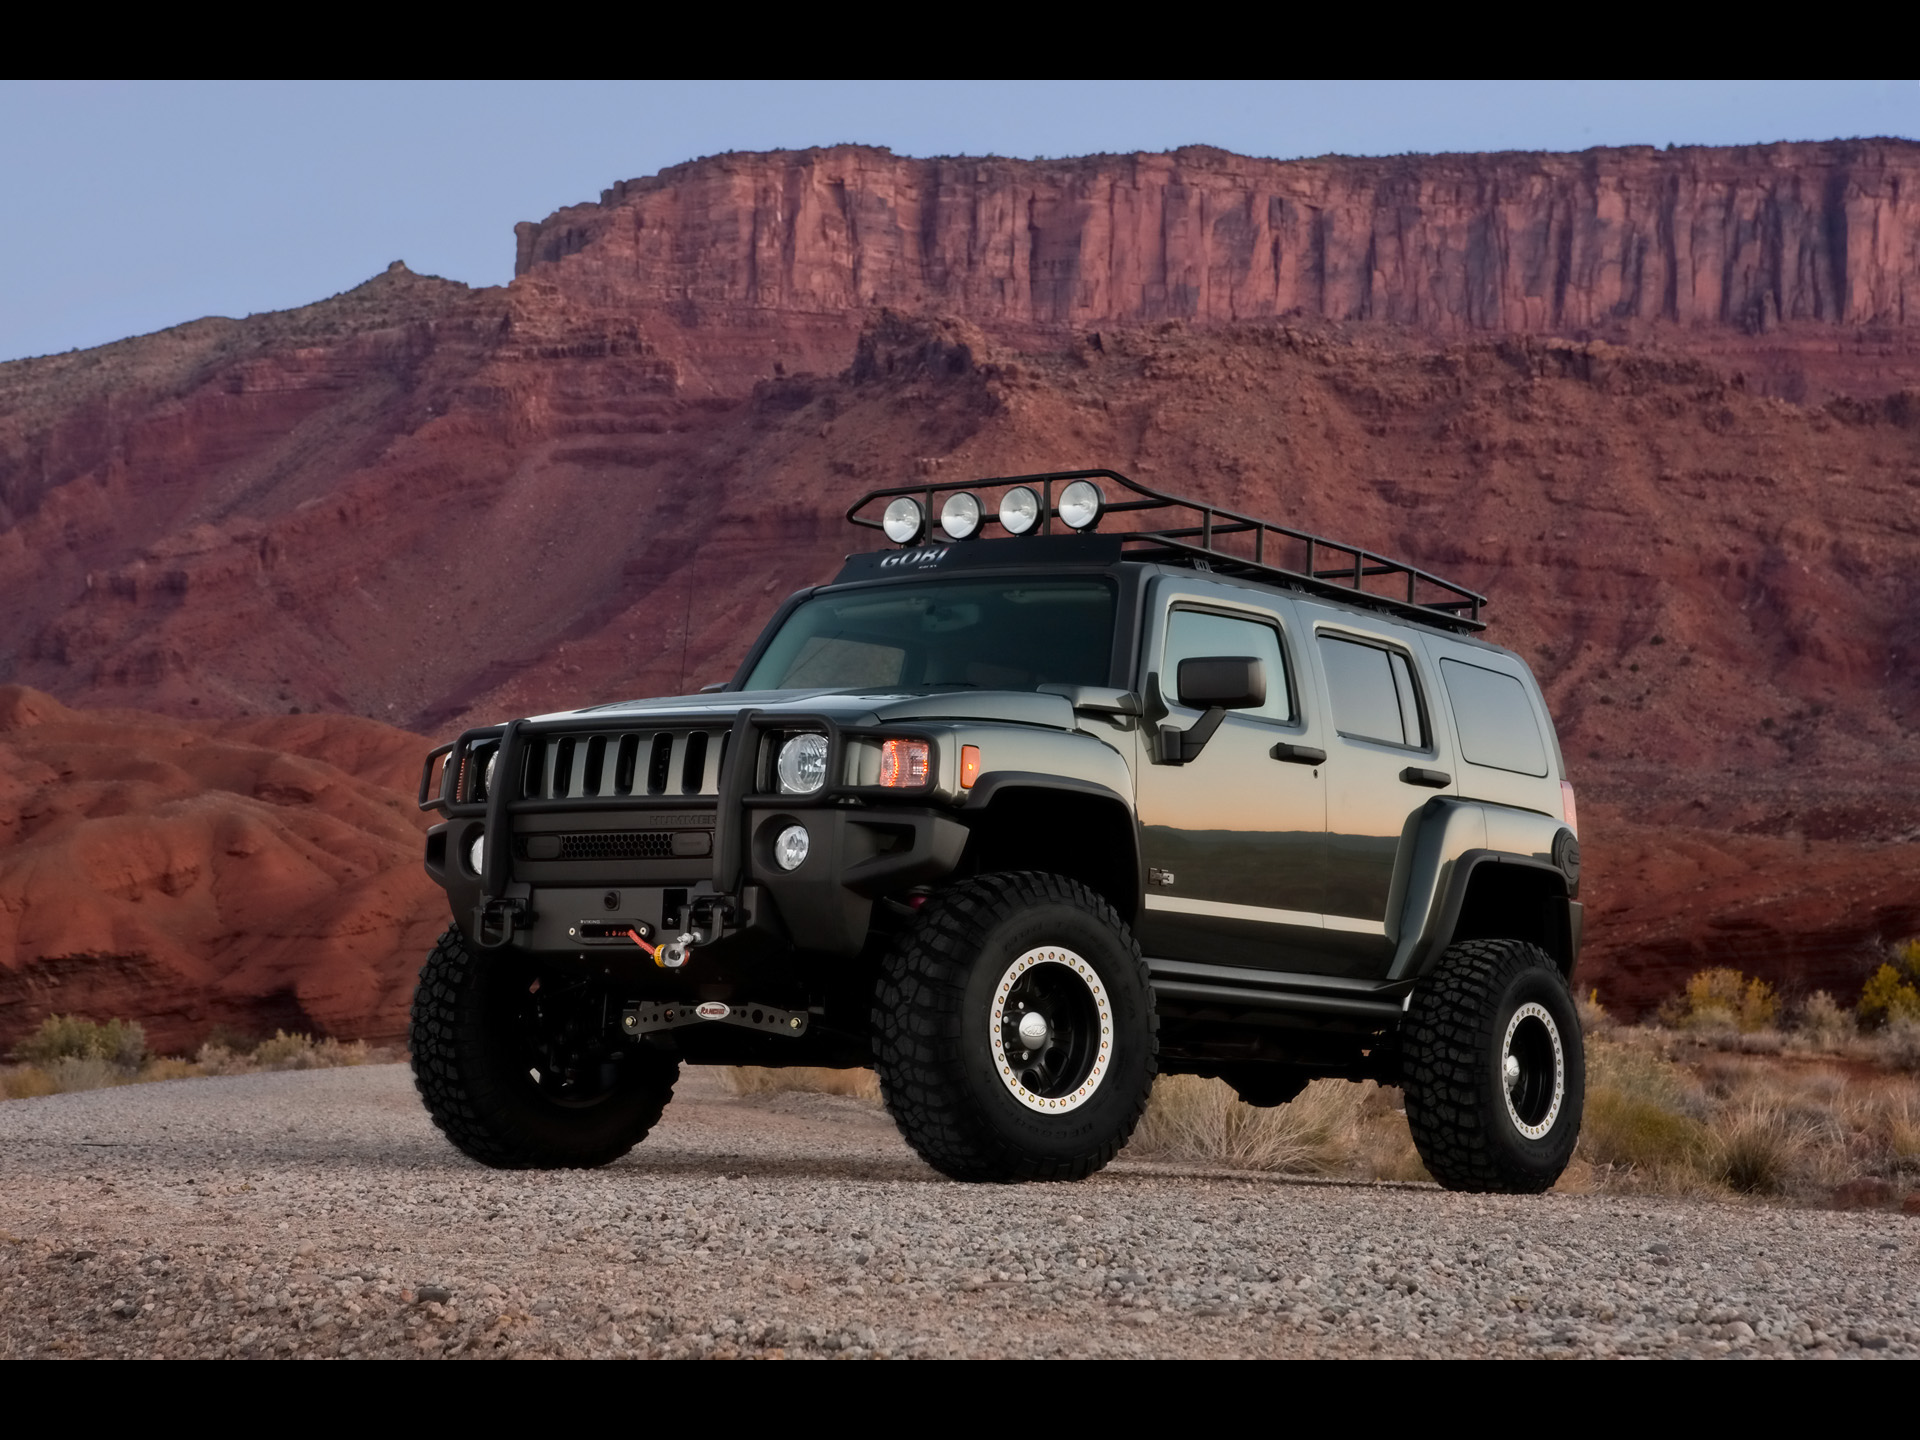 2009 Hummer H3 Moab Concept